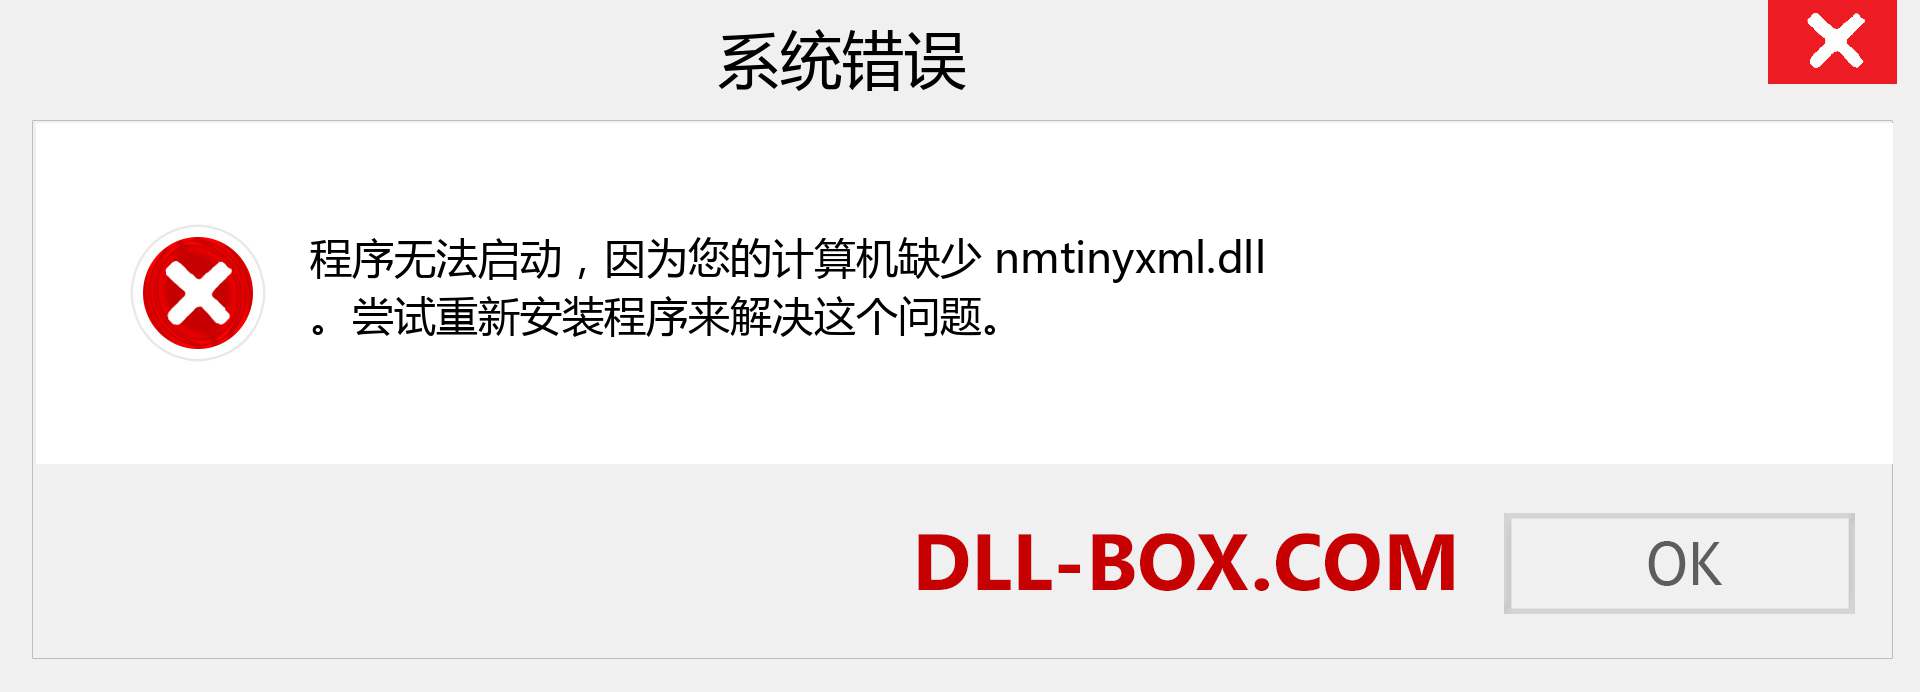 nmtinyxml.dll 文件丢失？。 适用于 Windows 7、8、10 的下载 - 修复 Windows、照片、图像上的 nmtinyxml dll 丢失错误